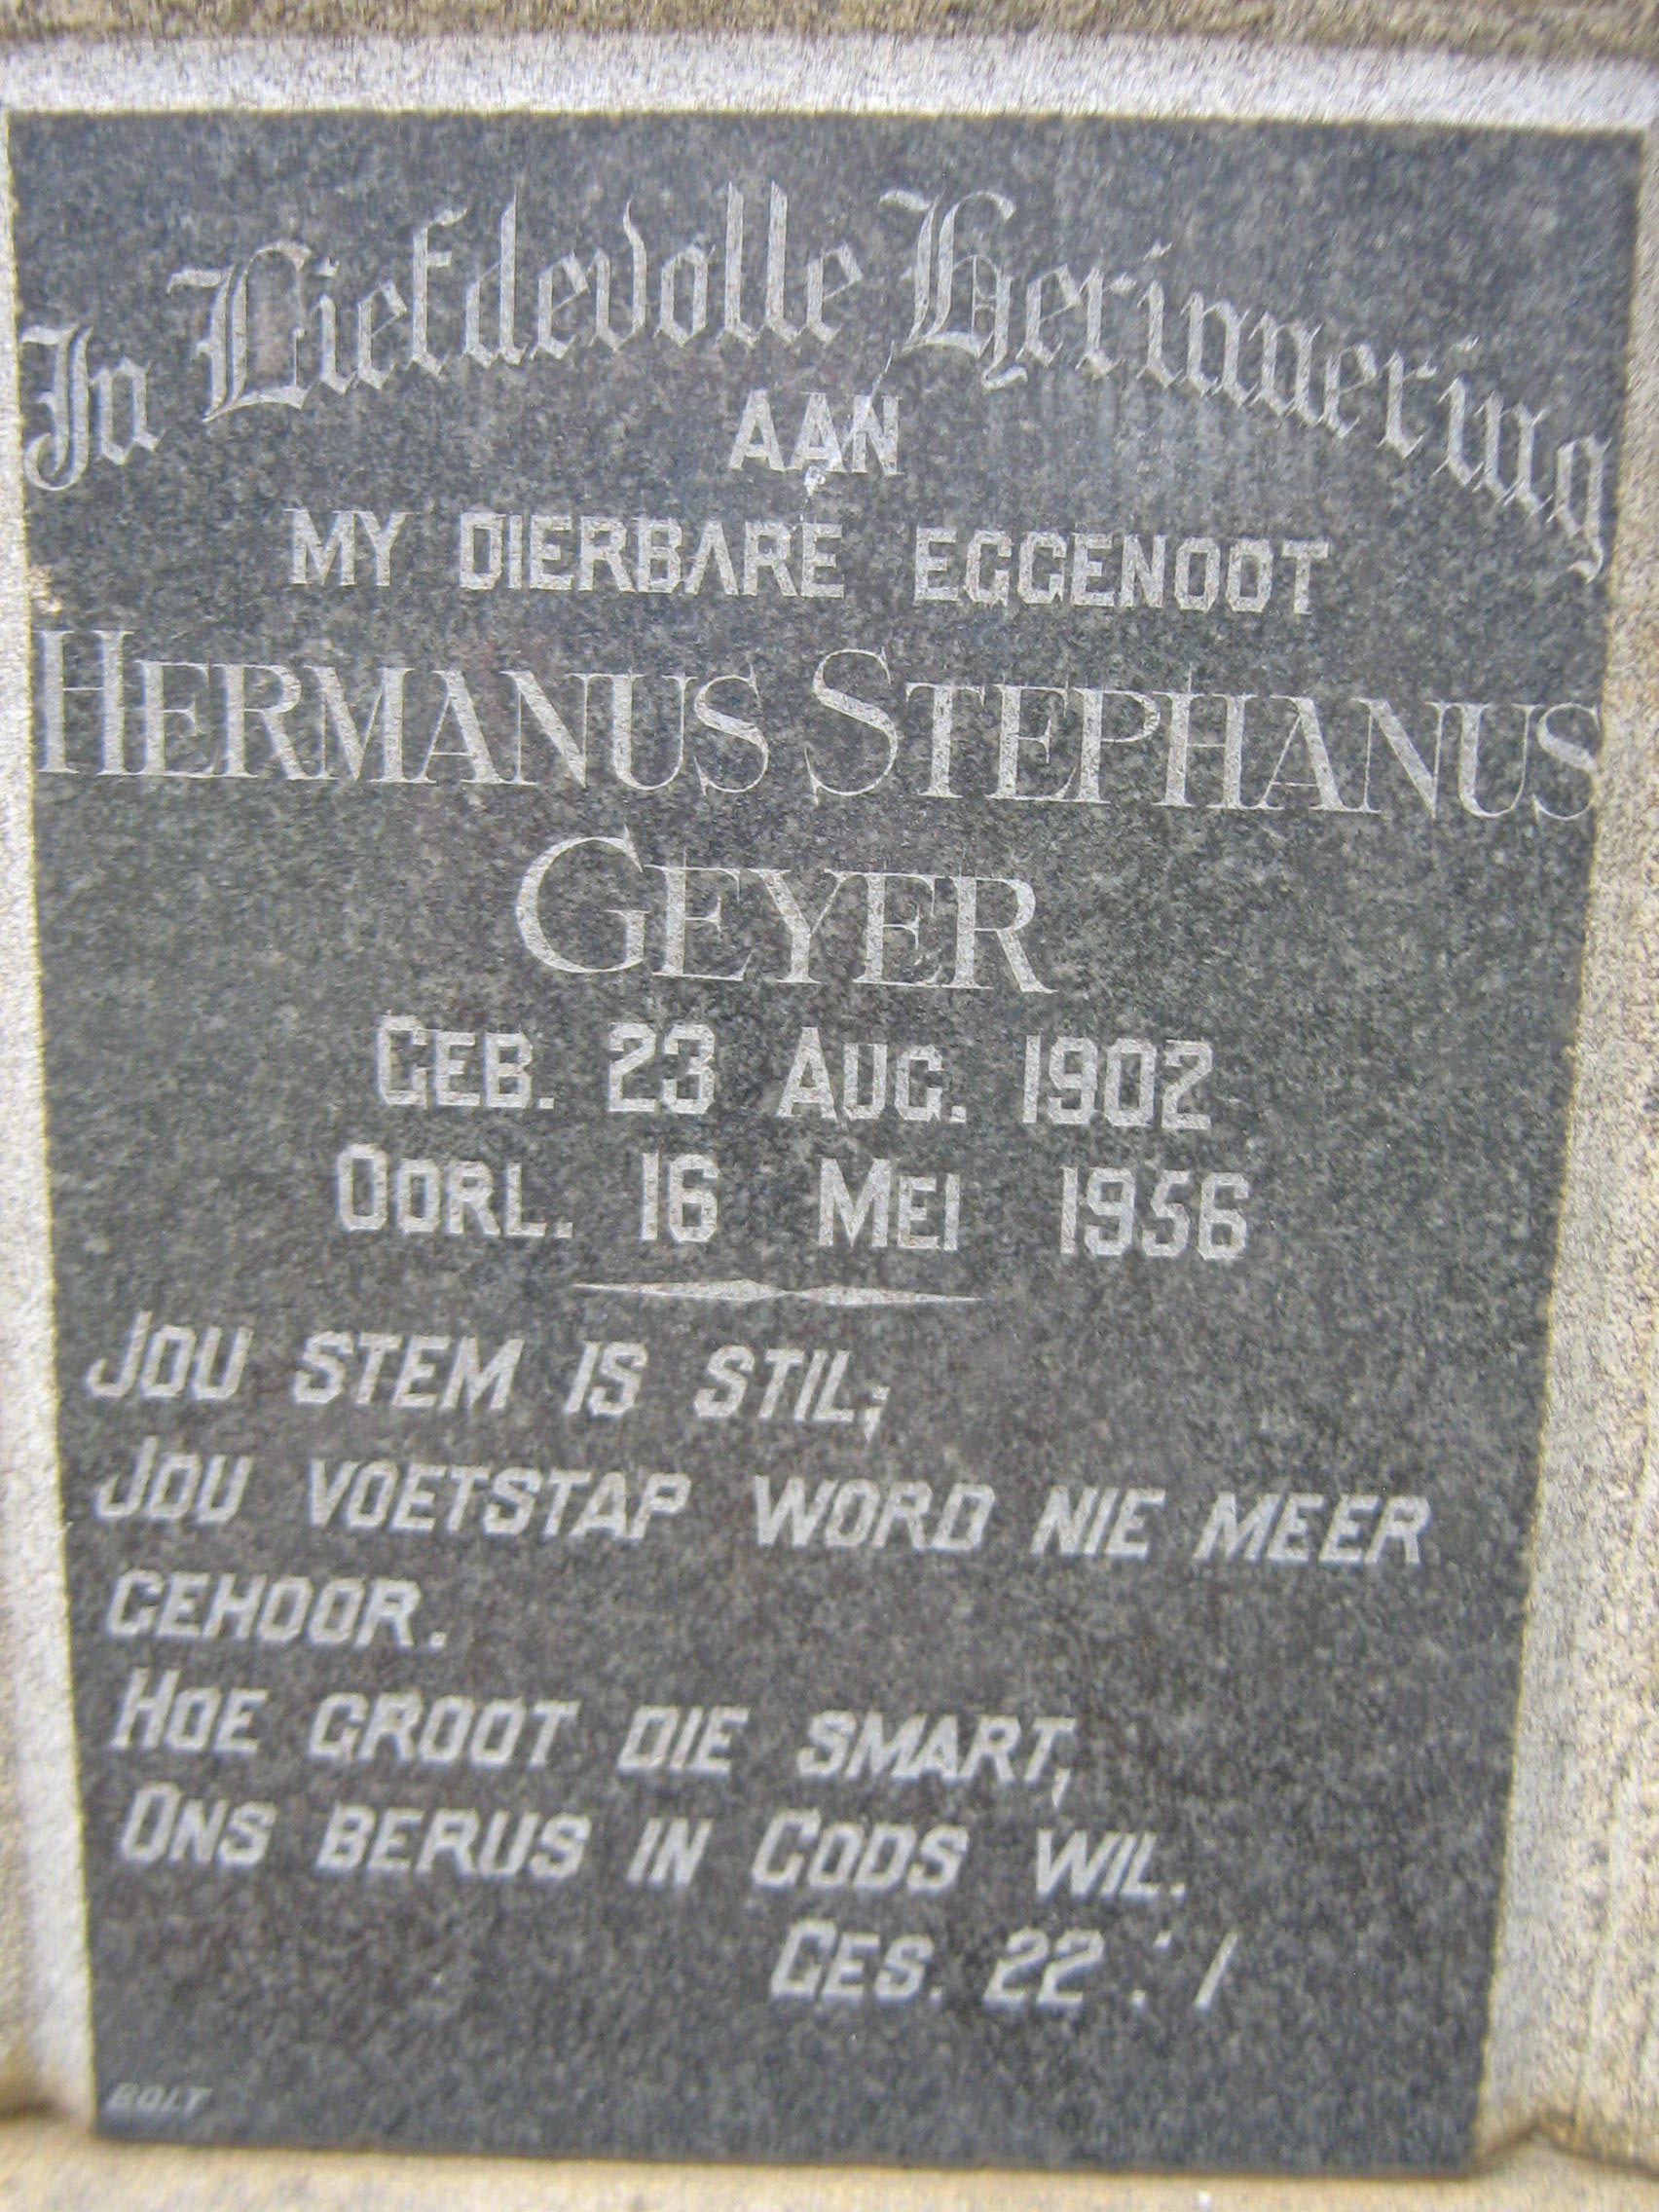 GEYER Hermanus Stephanus 1902-1956